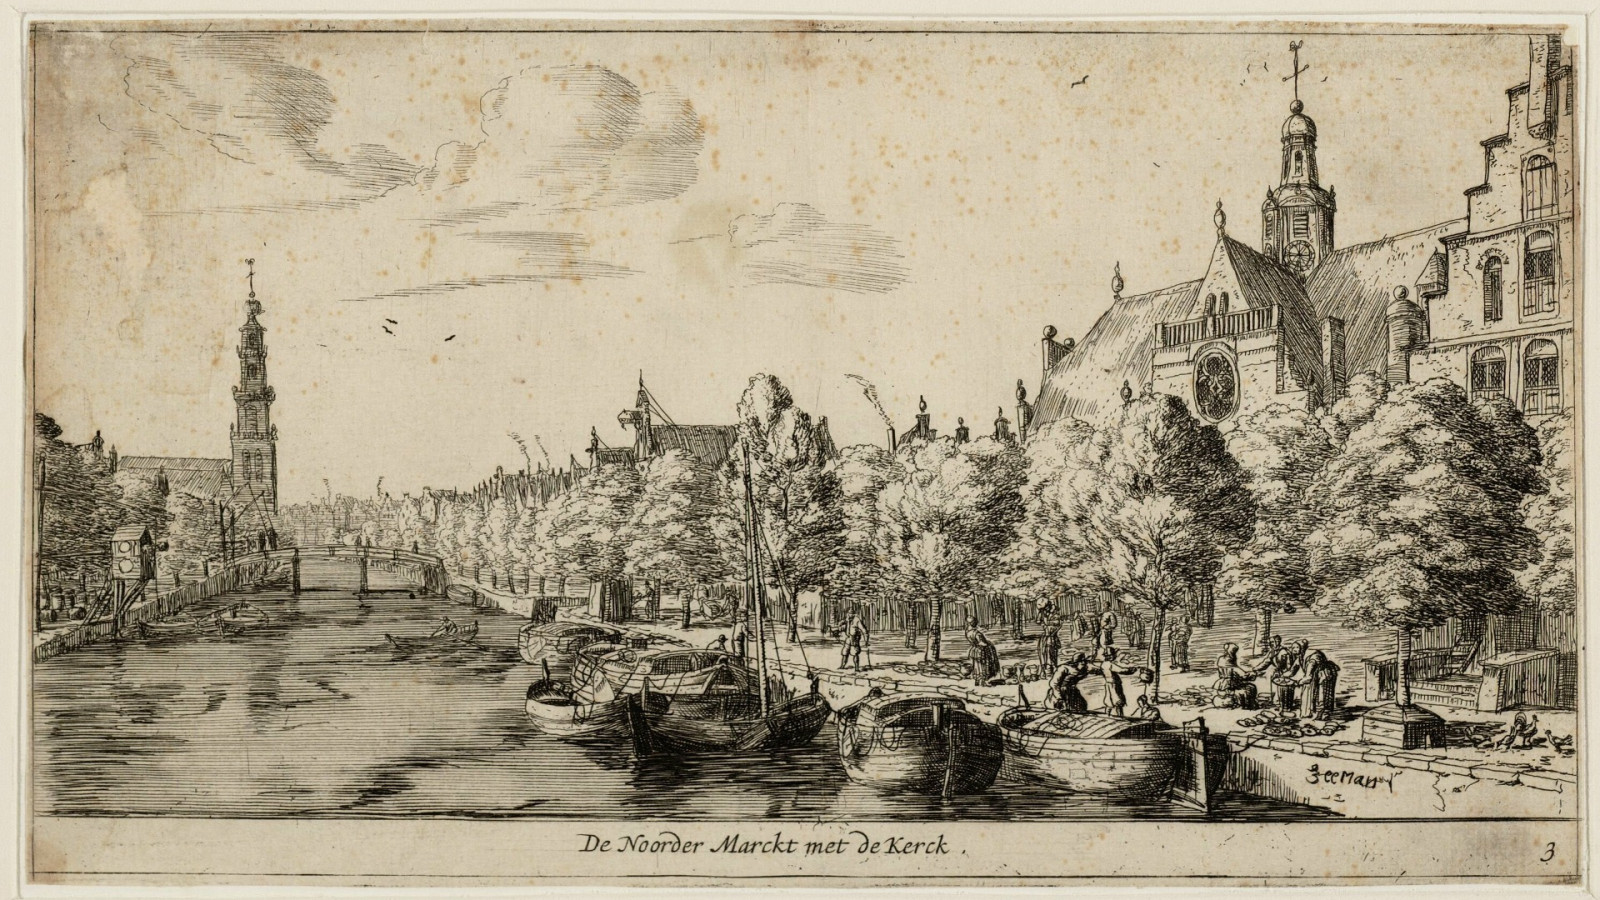 De Noorderkerk in 1659